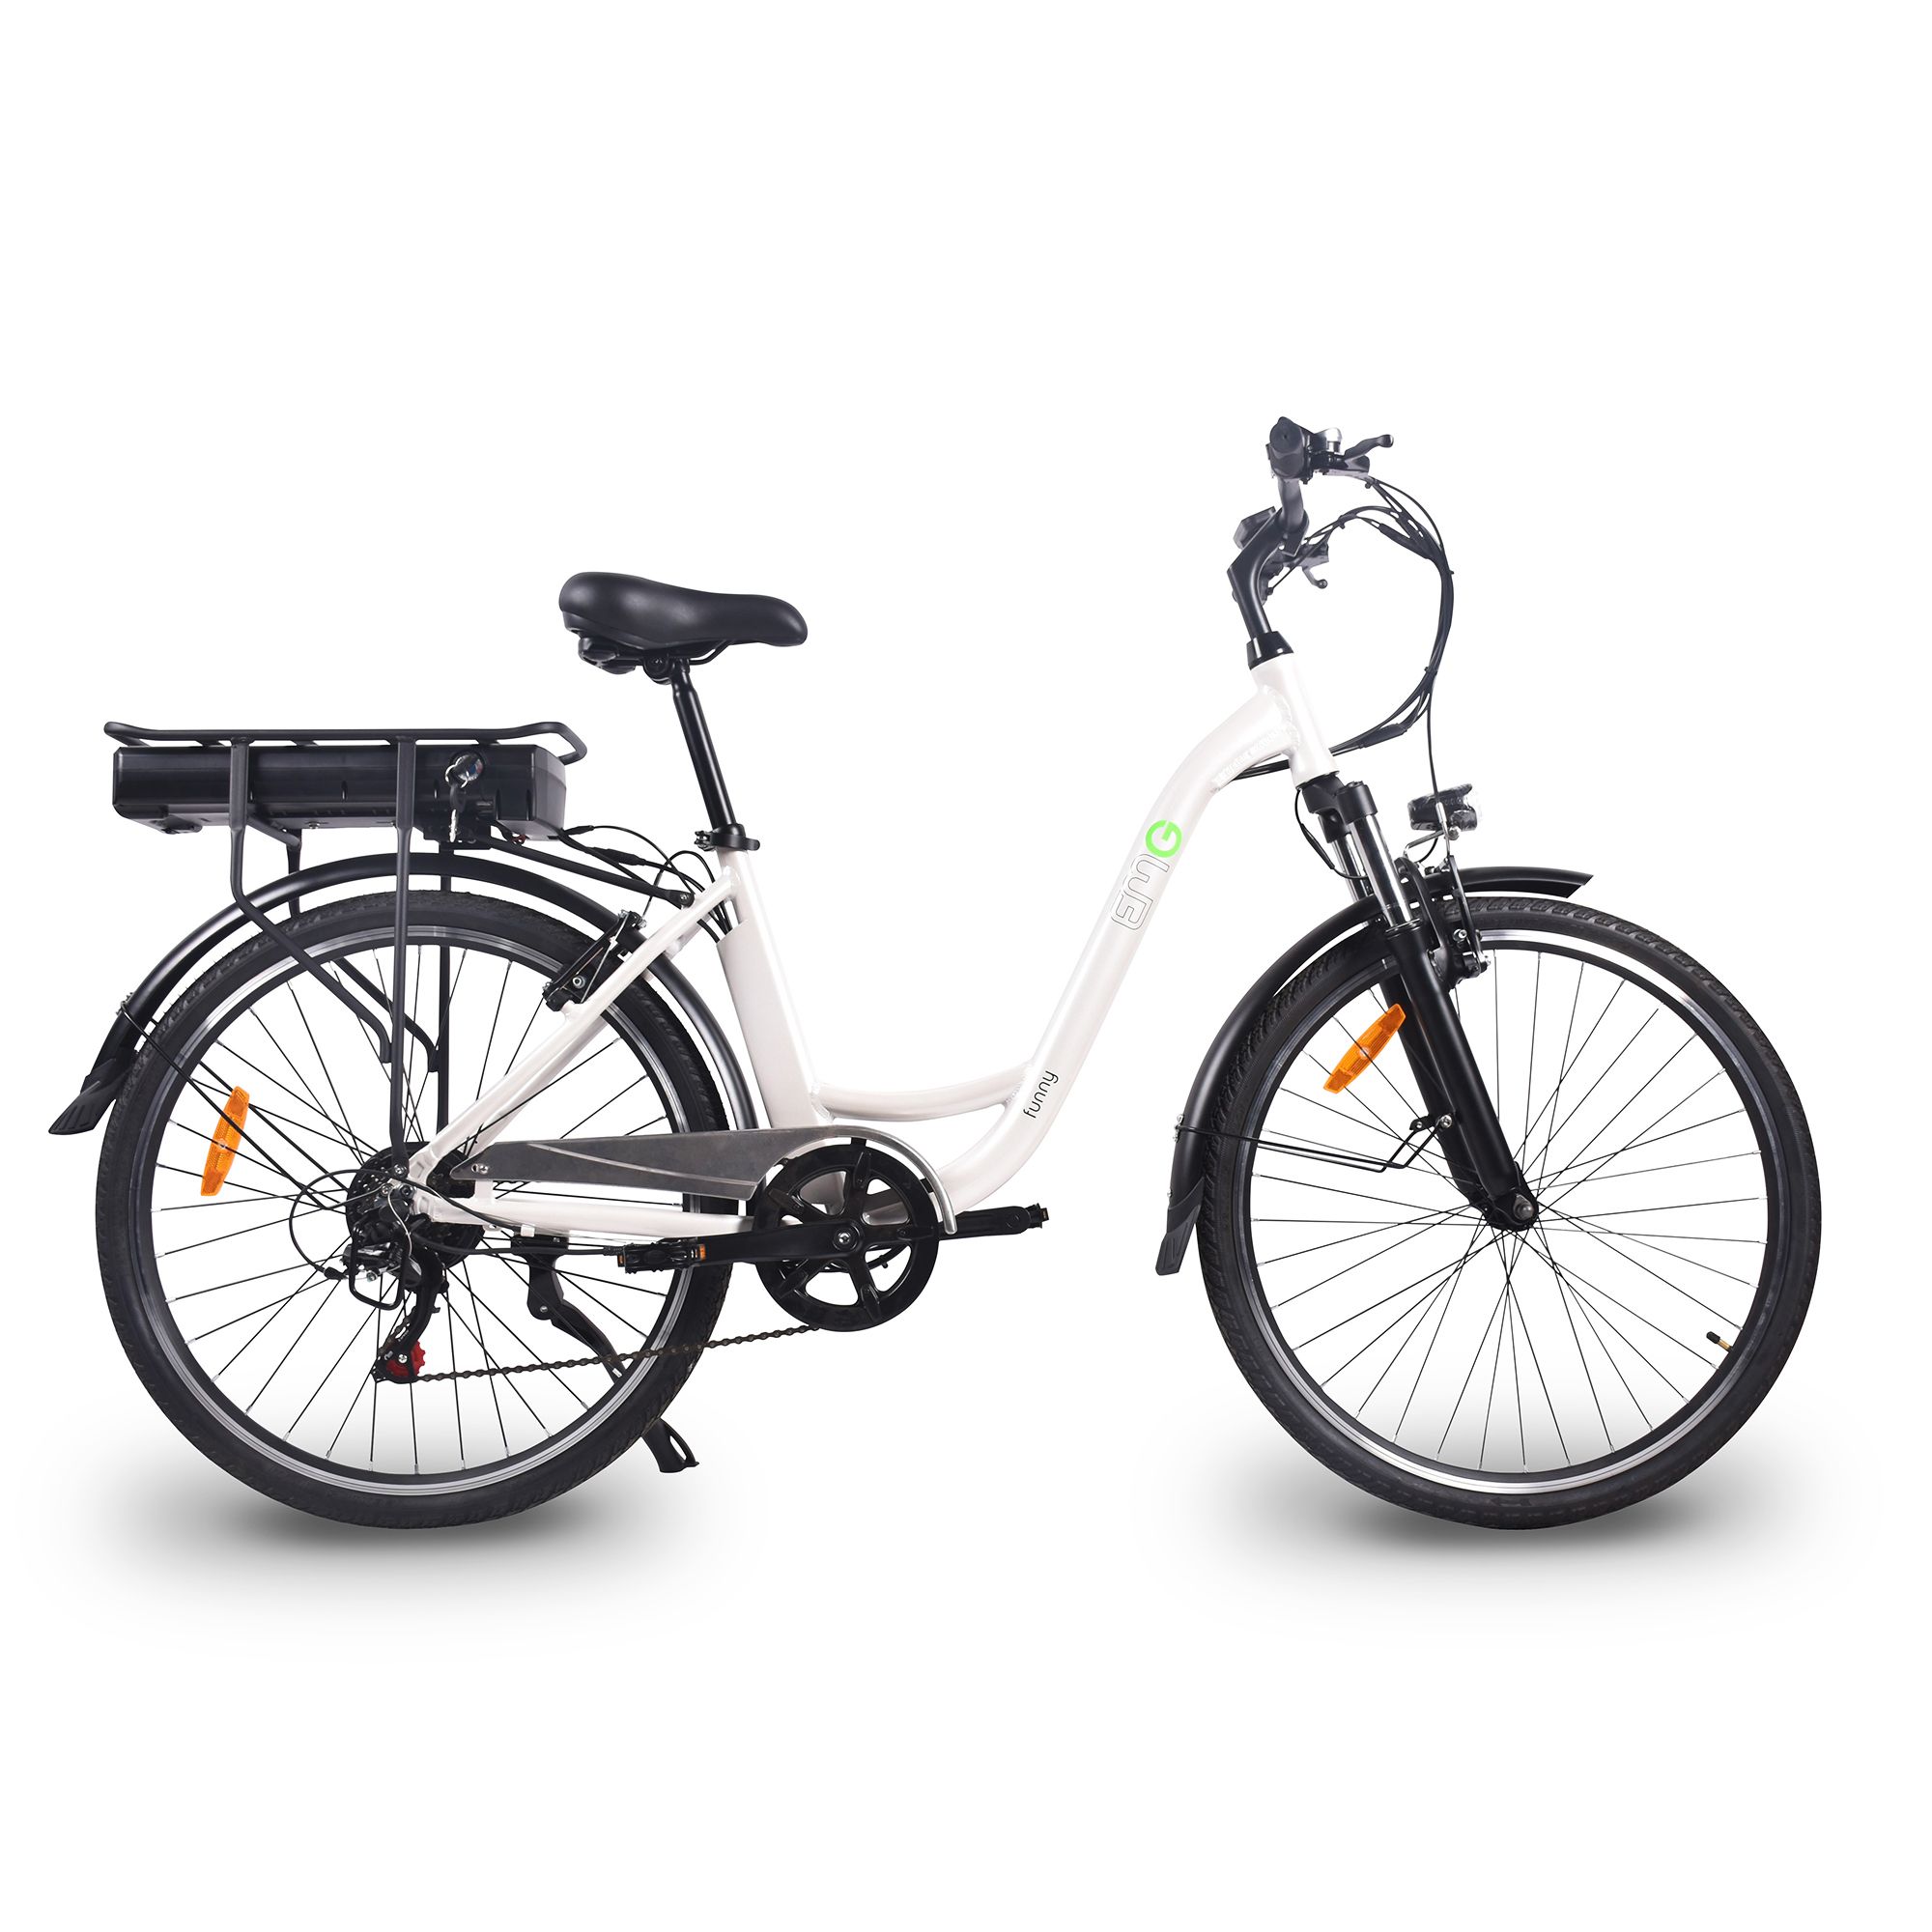 Image of Funny bici elettrica a pedalata assistita con ruote 26"